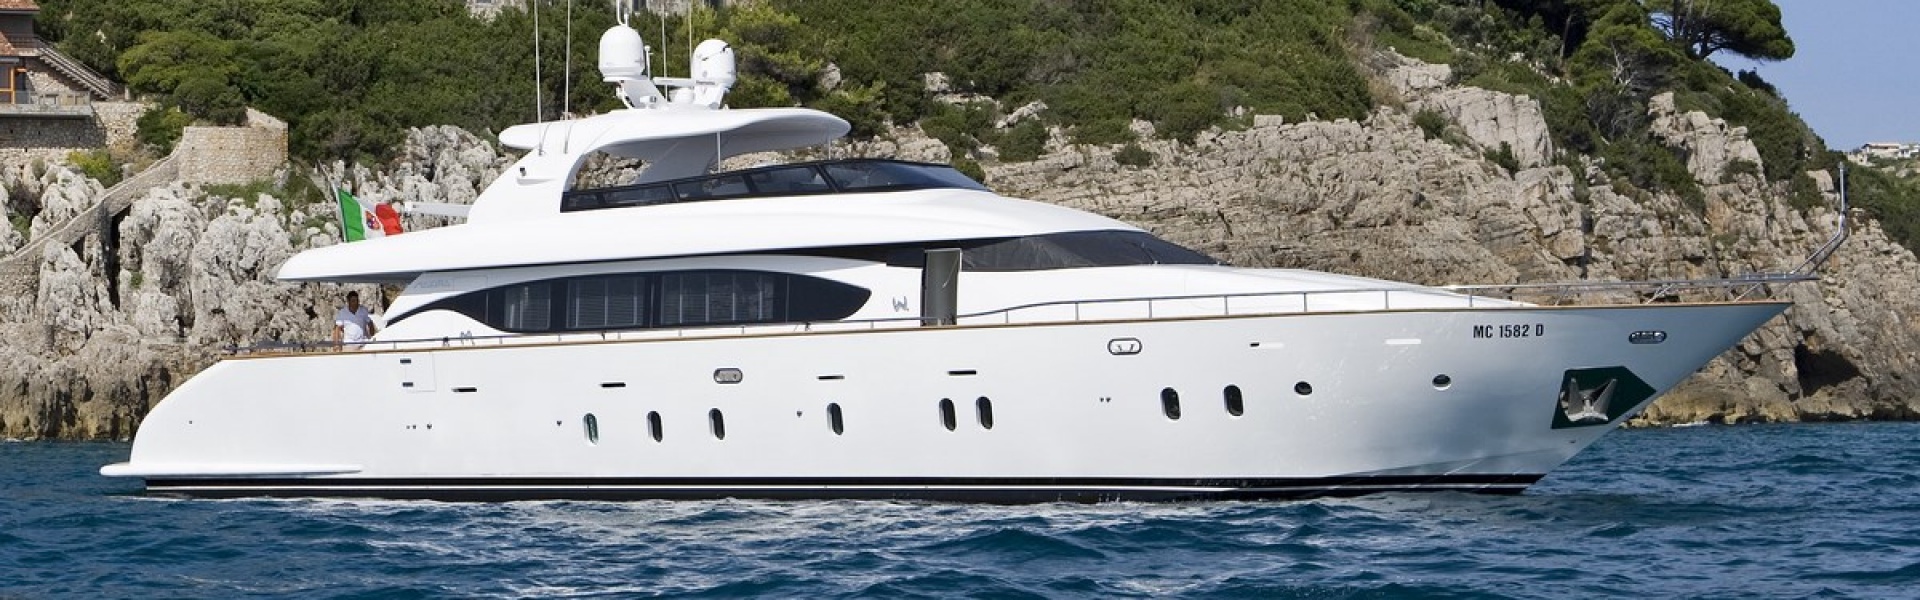 Yacht charter Maiora 27M